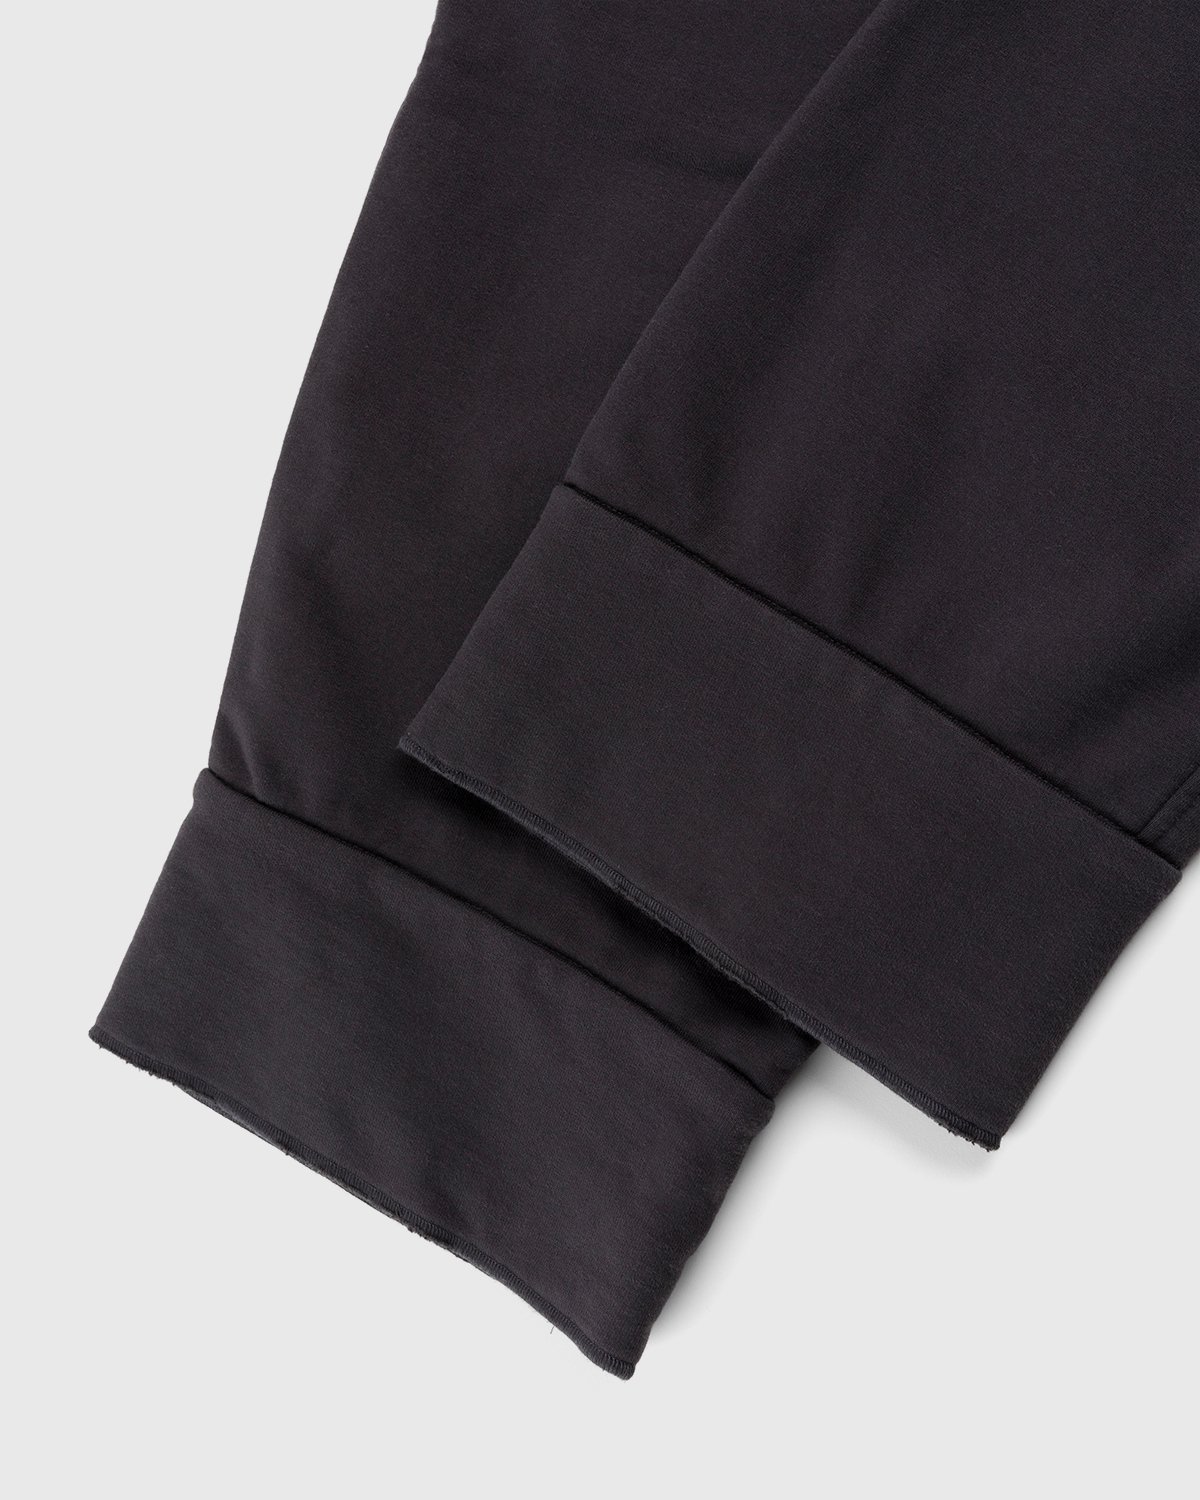 Maison Margiela - Tailored Cotton Trousers Washed Black - Clothing - Black - Image 4